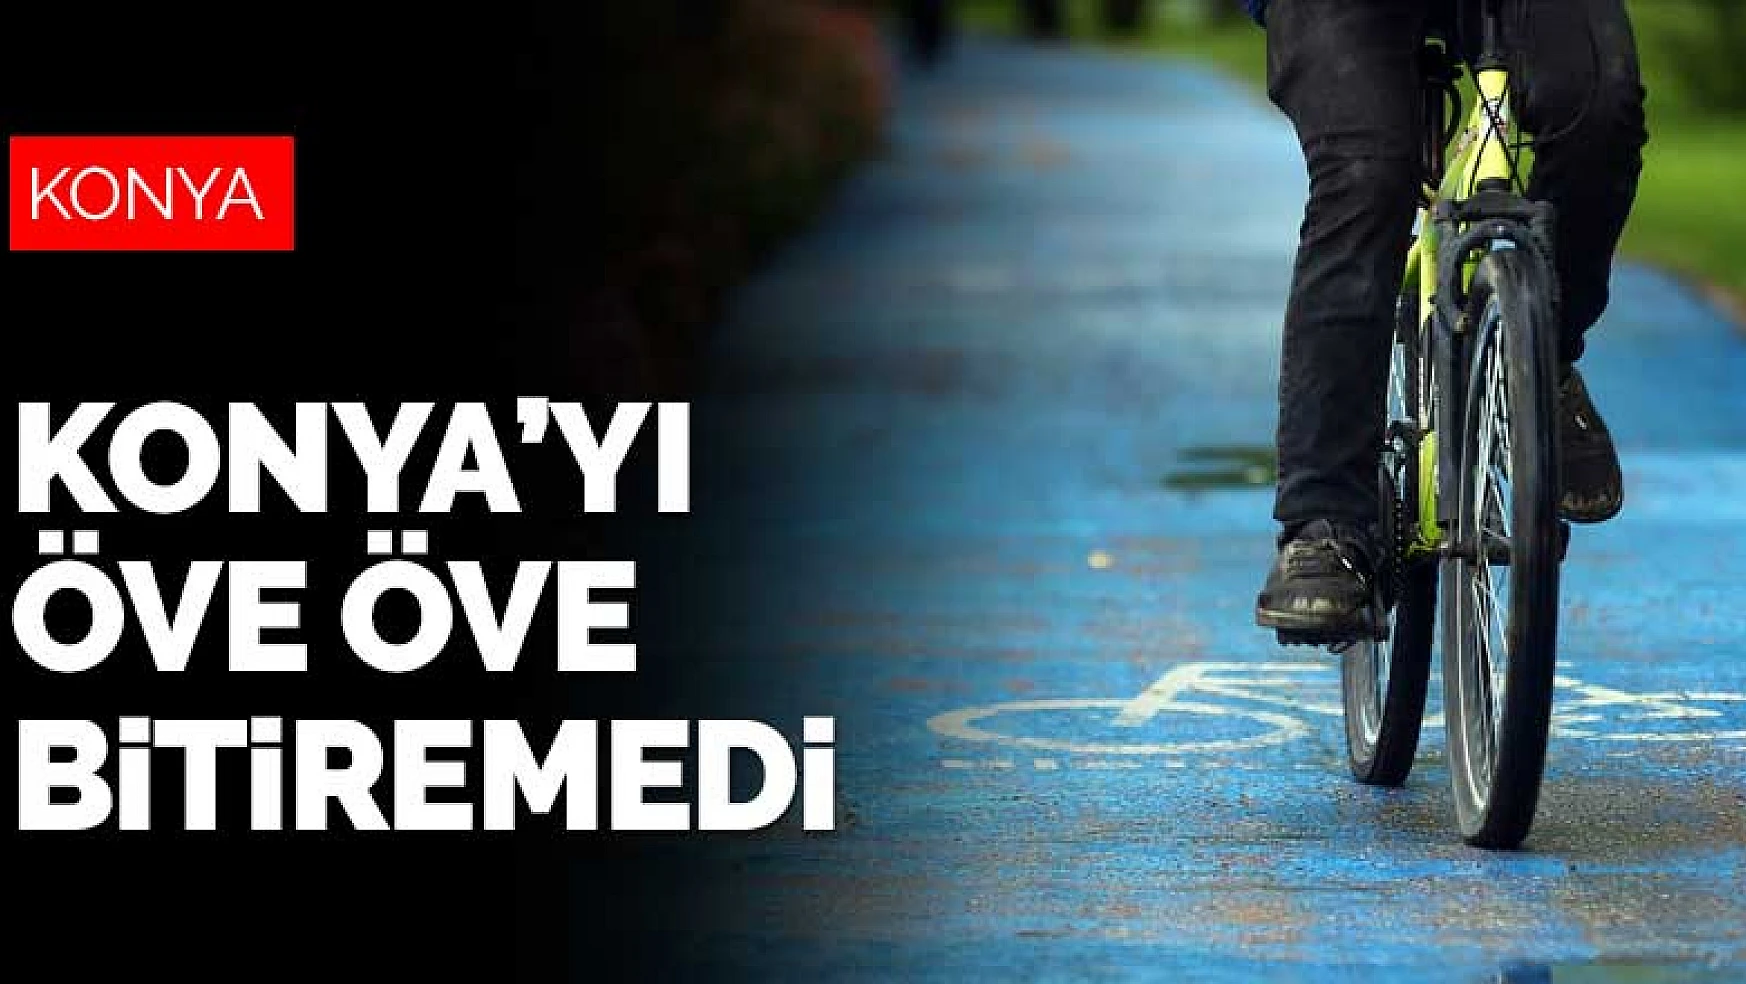 WRI bisiklet yolları 550 kilometreye ulaşan Konya'yı öve öve bitiremedi